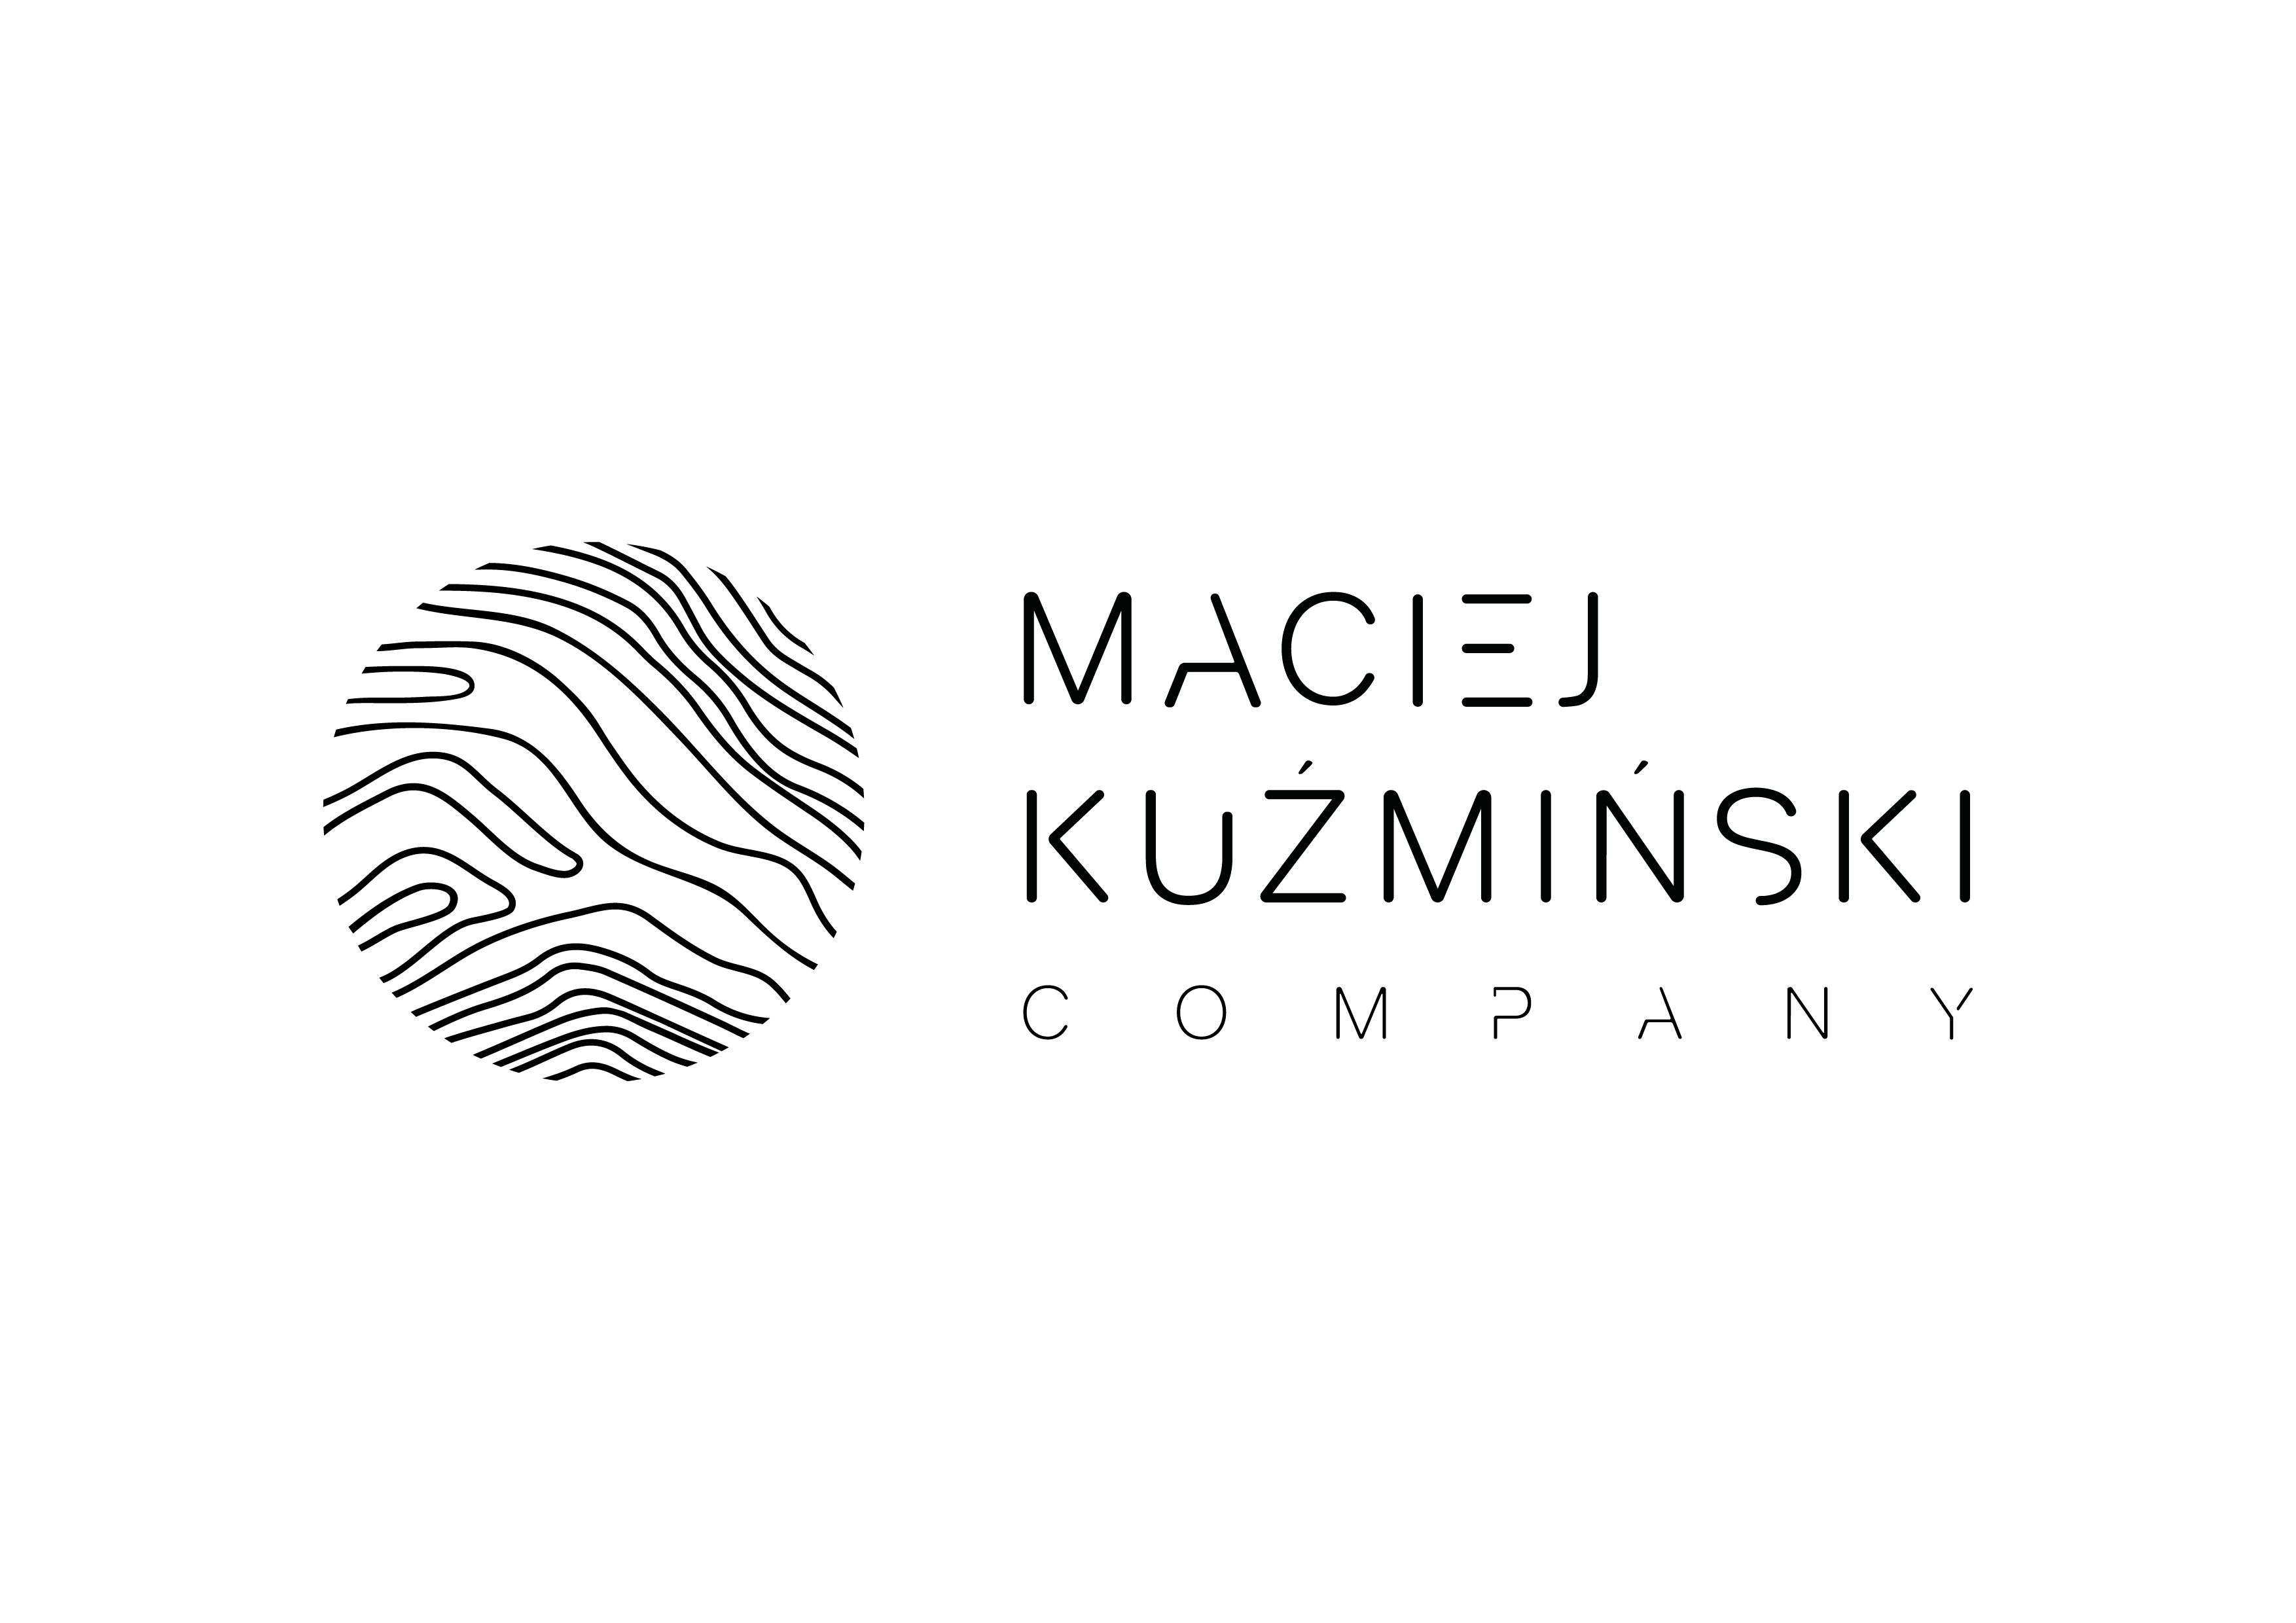 Maciej Kuzminski